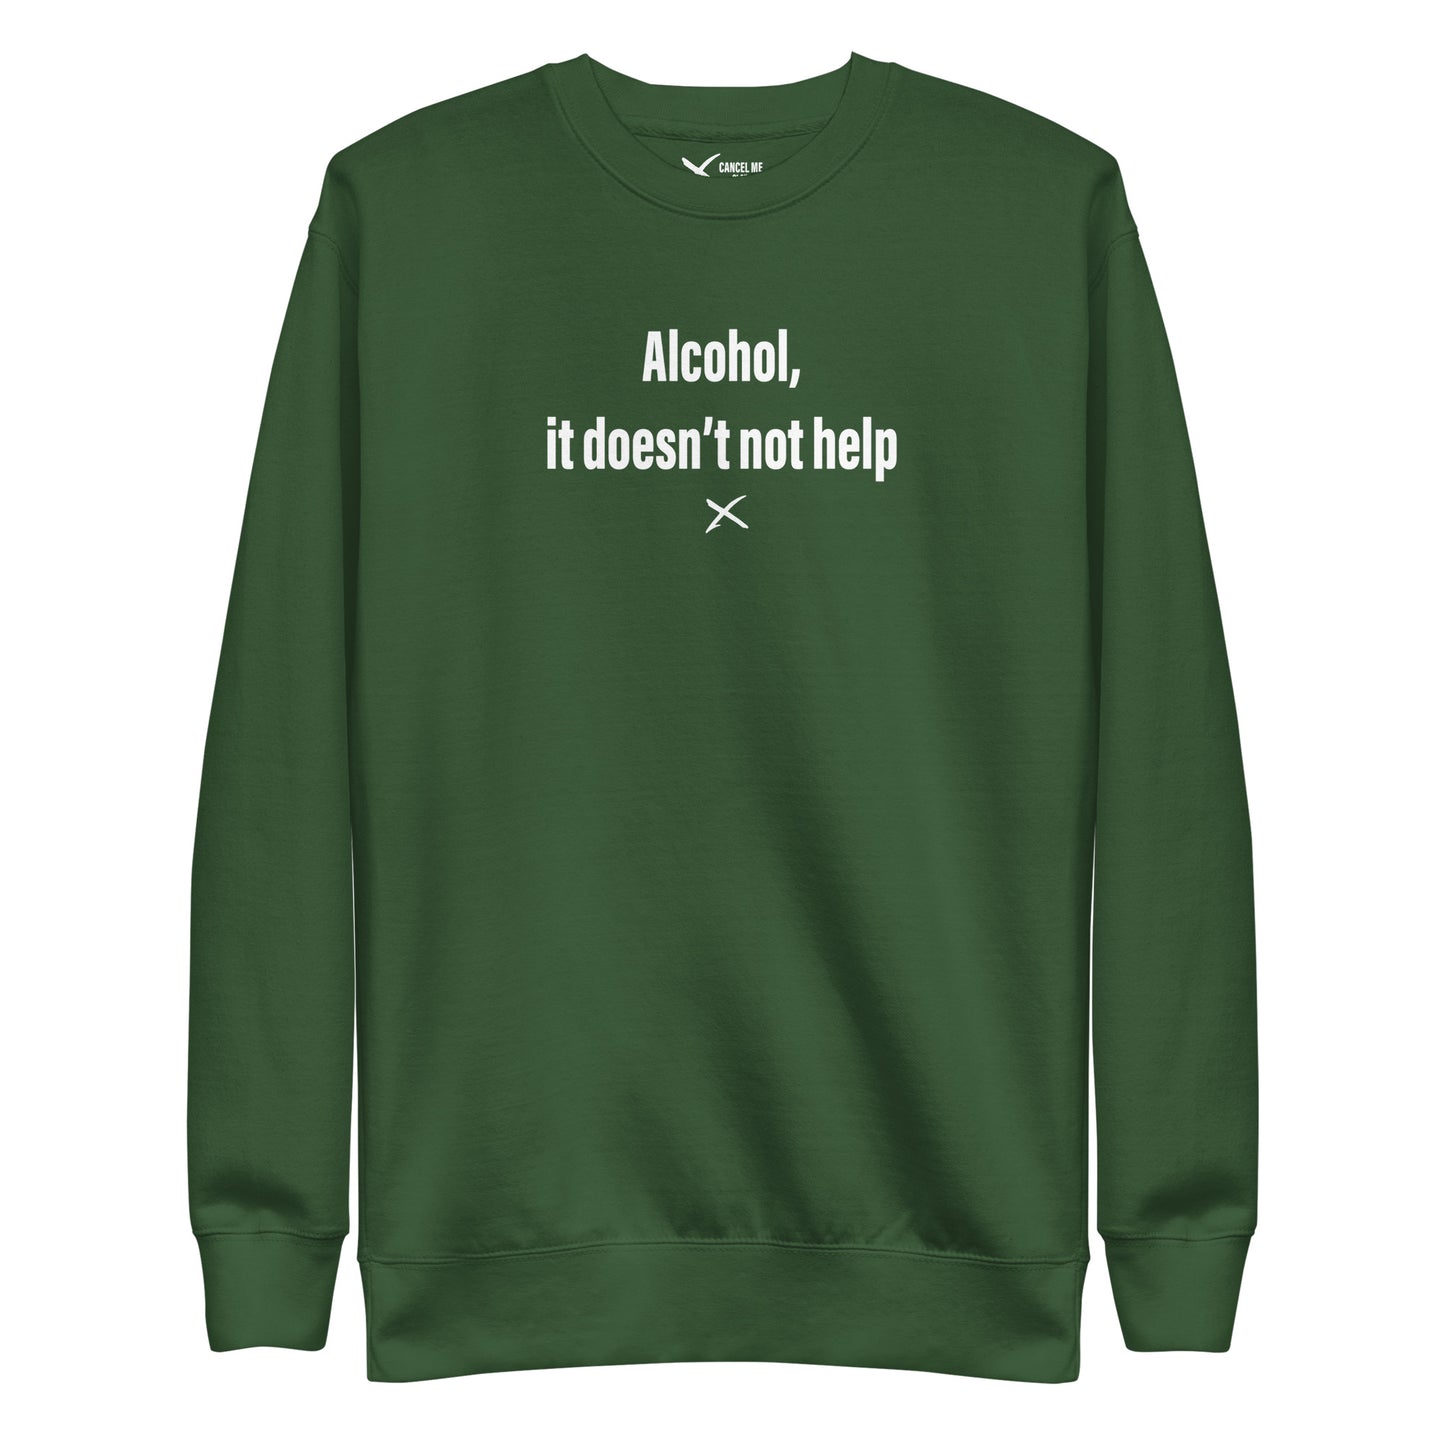 Alcohol, it doesn't not help - Sweatshirt